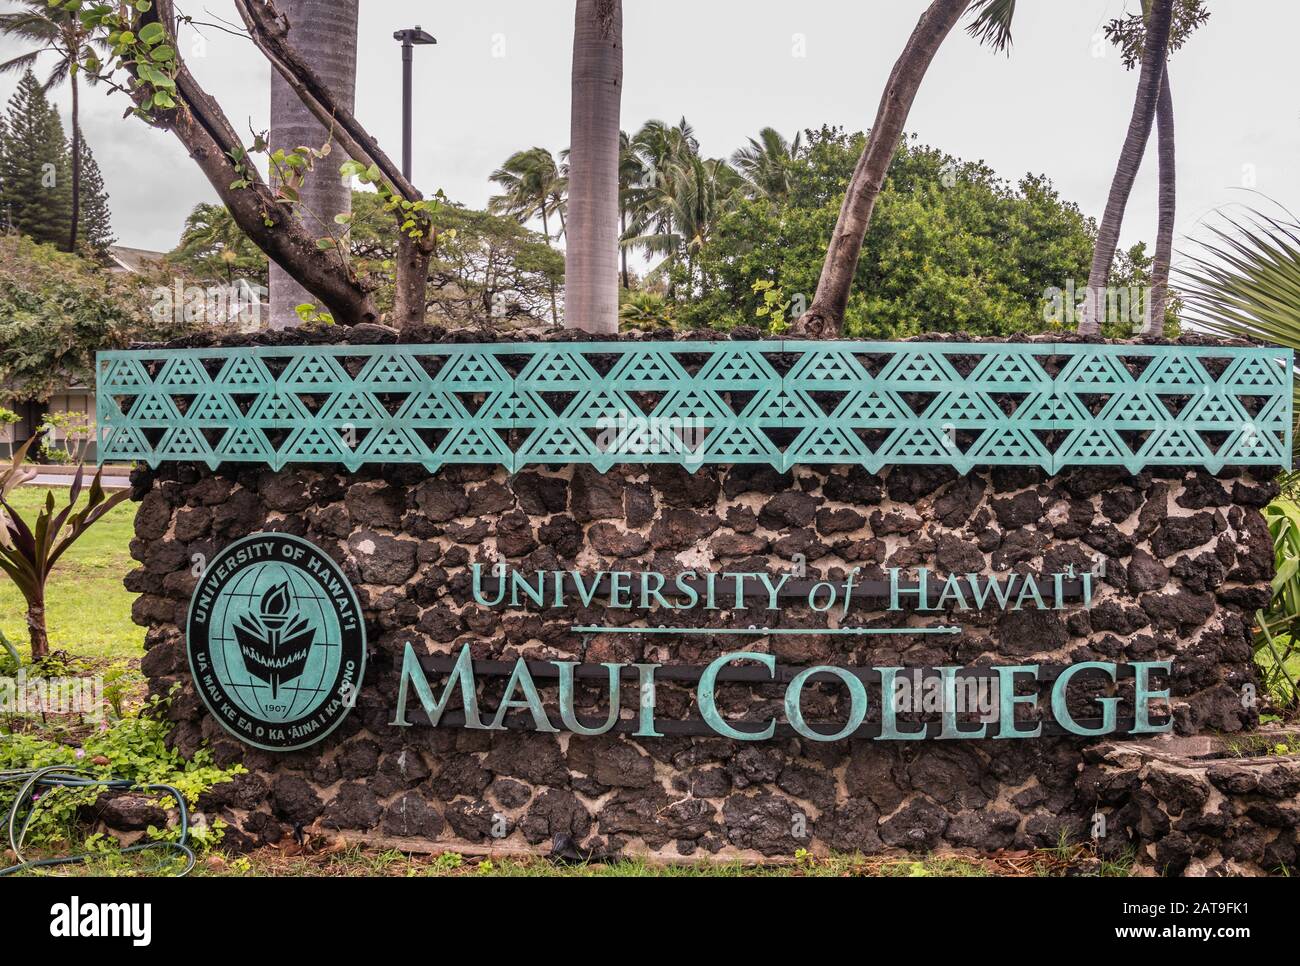 Kahului, Maui, Hawaï, États-Unis. - 12 janvier 2020: Signe de langue anglaise pour l'Université d'Hawaï, campus de l'université de Maui, situé dans le feuillage vert et la fleur Banque D'Images